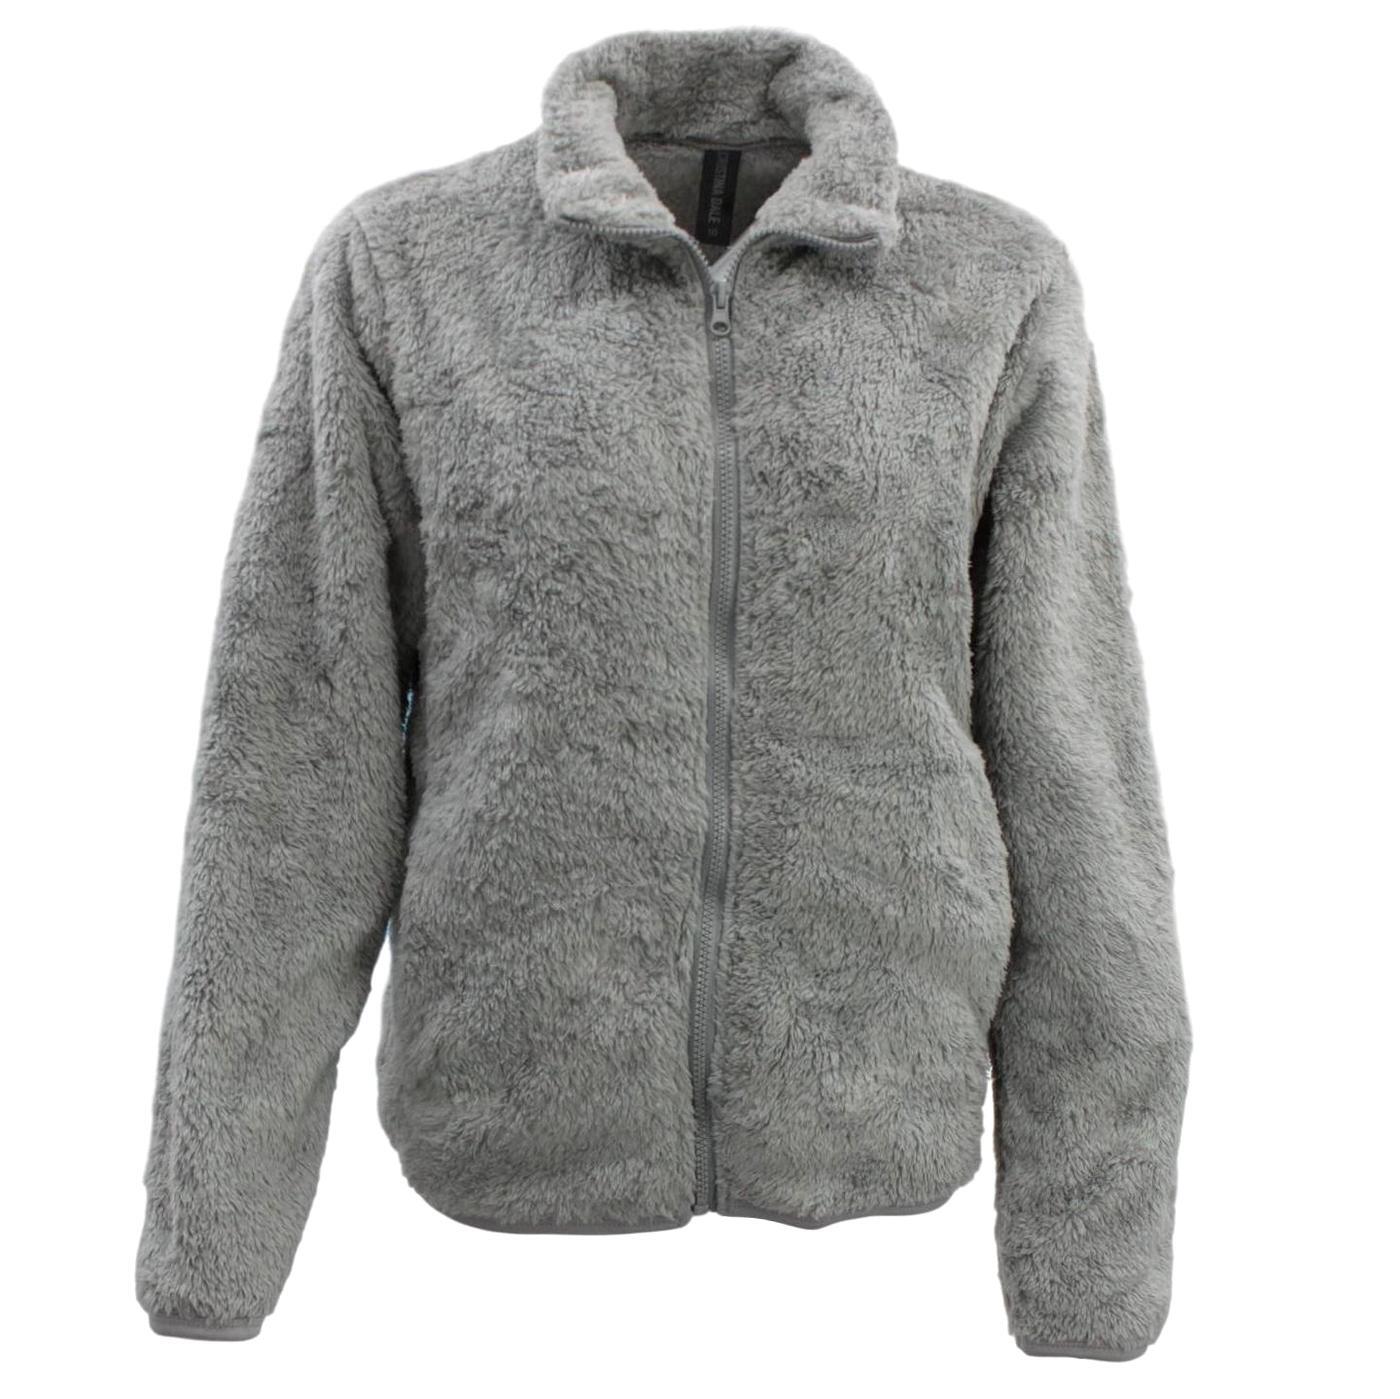 fil-women-s-sherpa-jacket-fleece-winter-warm-soft-teddy-casual-coat-zip-up-ebay